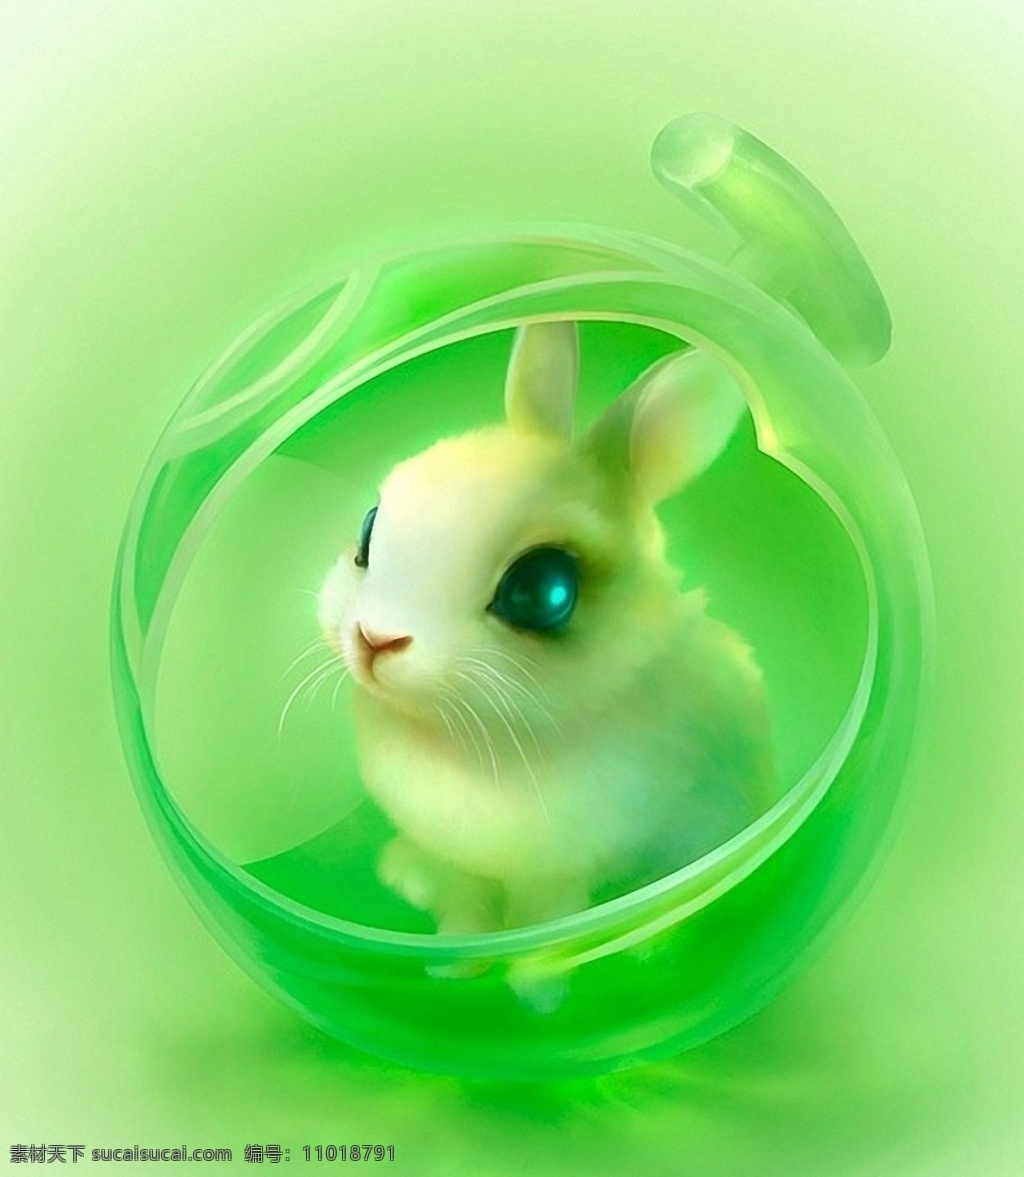 白兔 清新白兔 清新 兔子 绿色清新 生物世界 家禽家畜